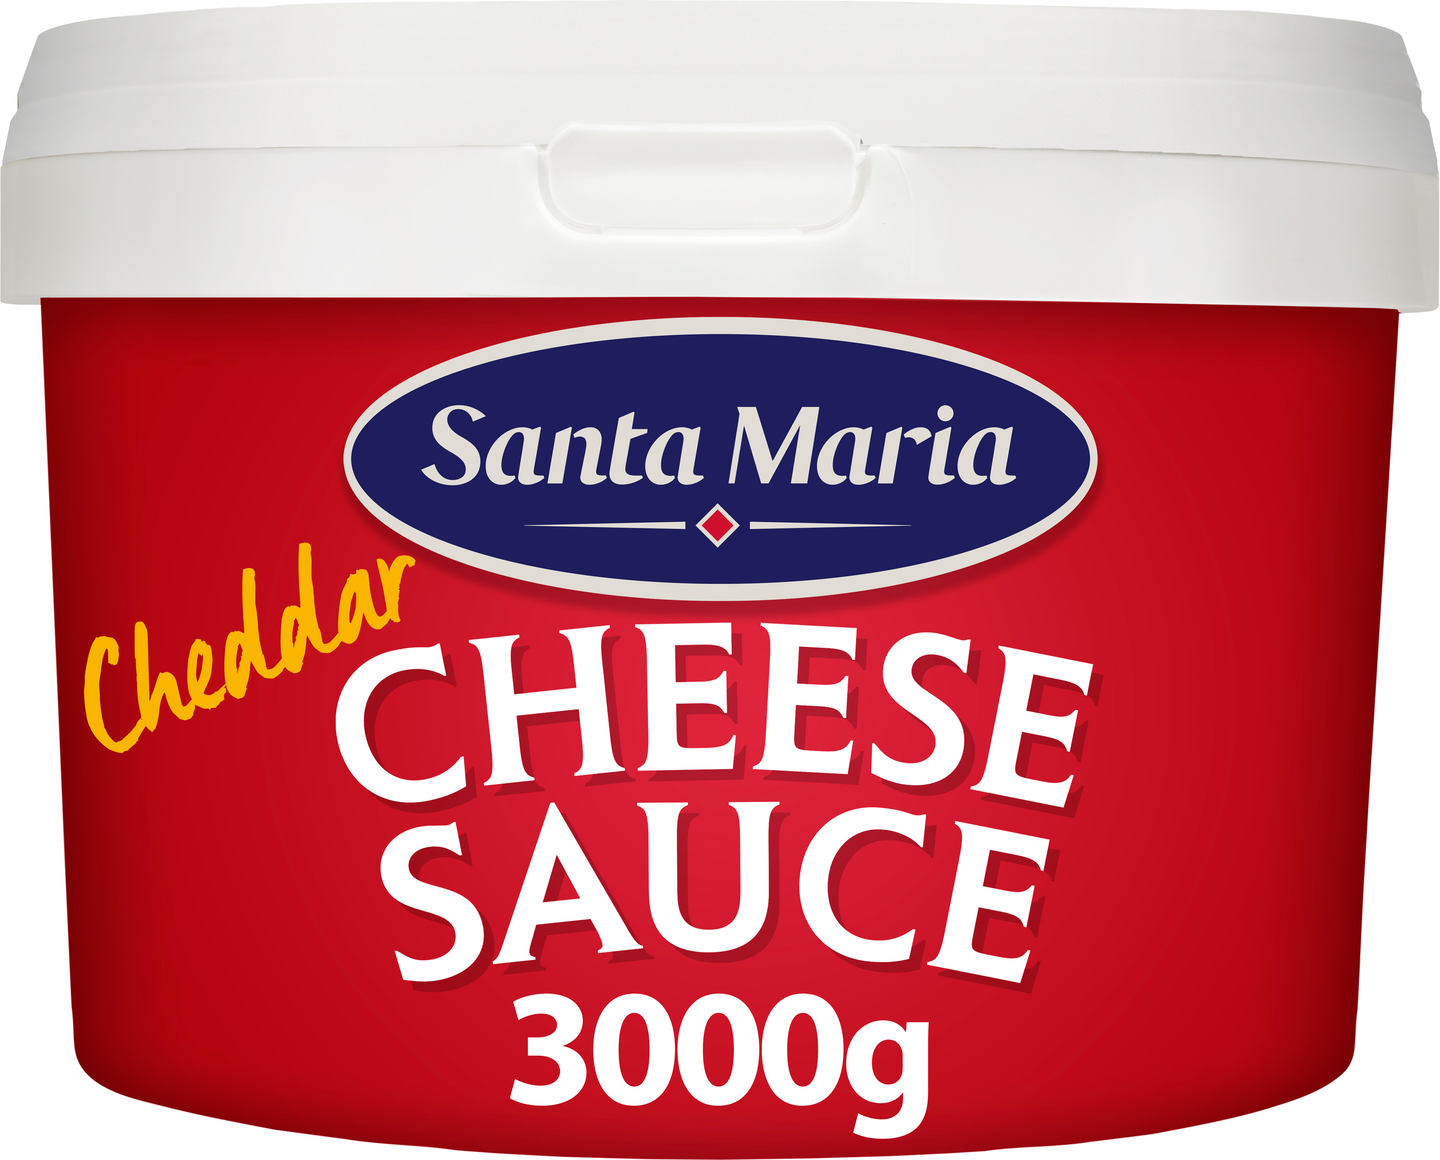 Santa Maria cheddar cheese sauce 3kg